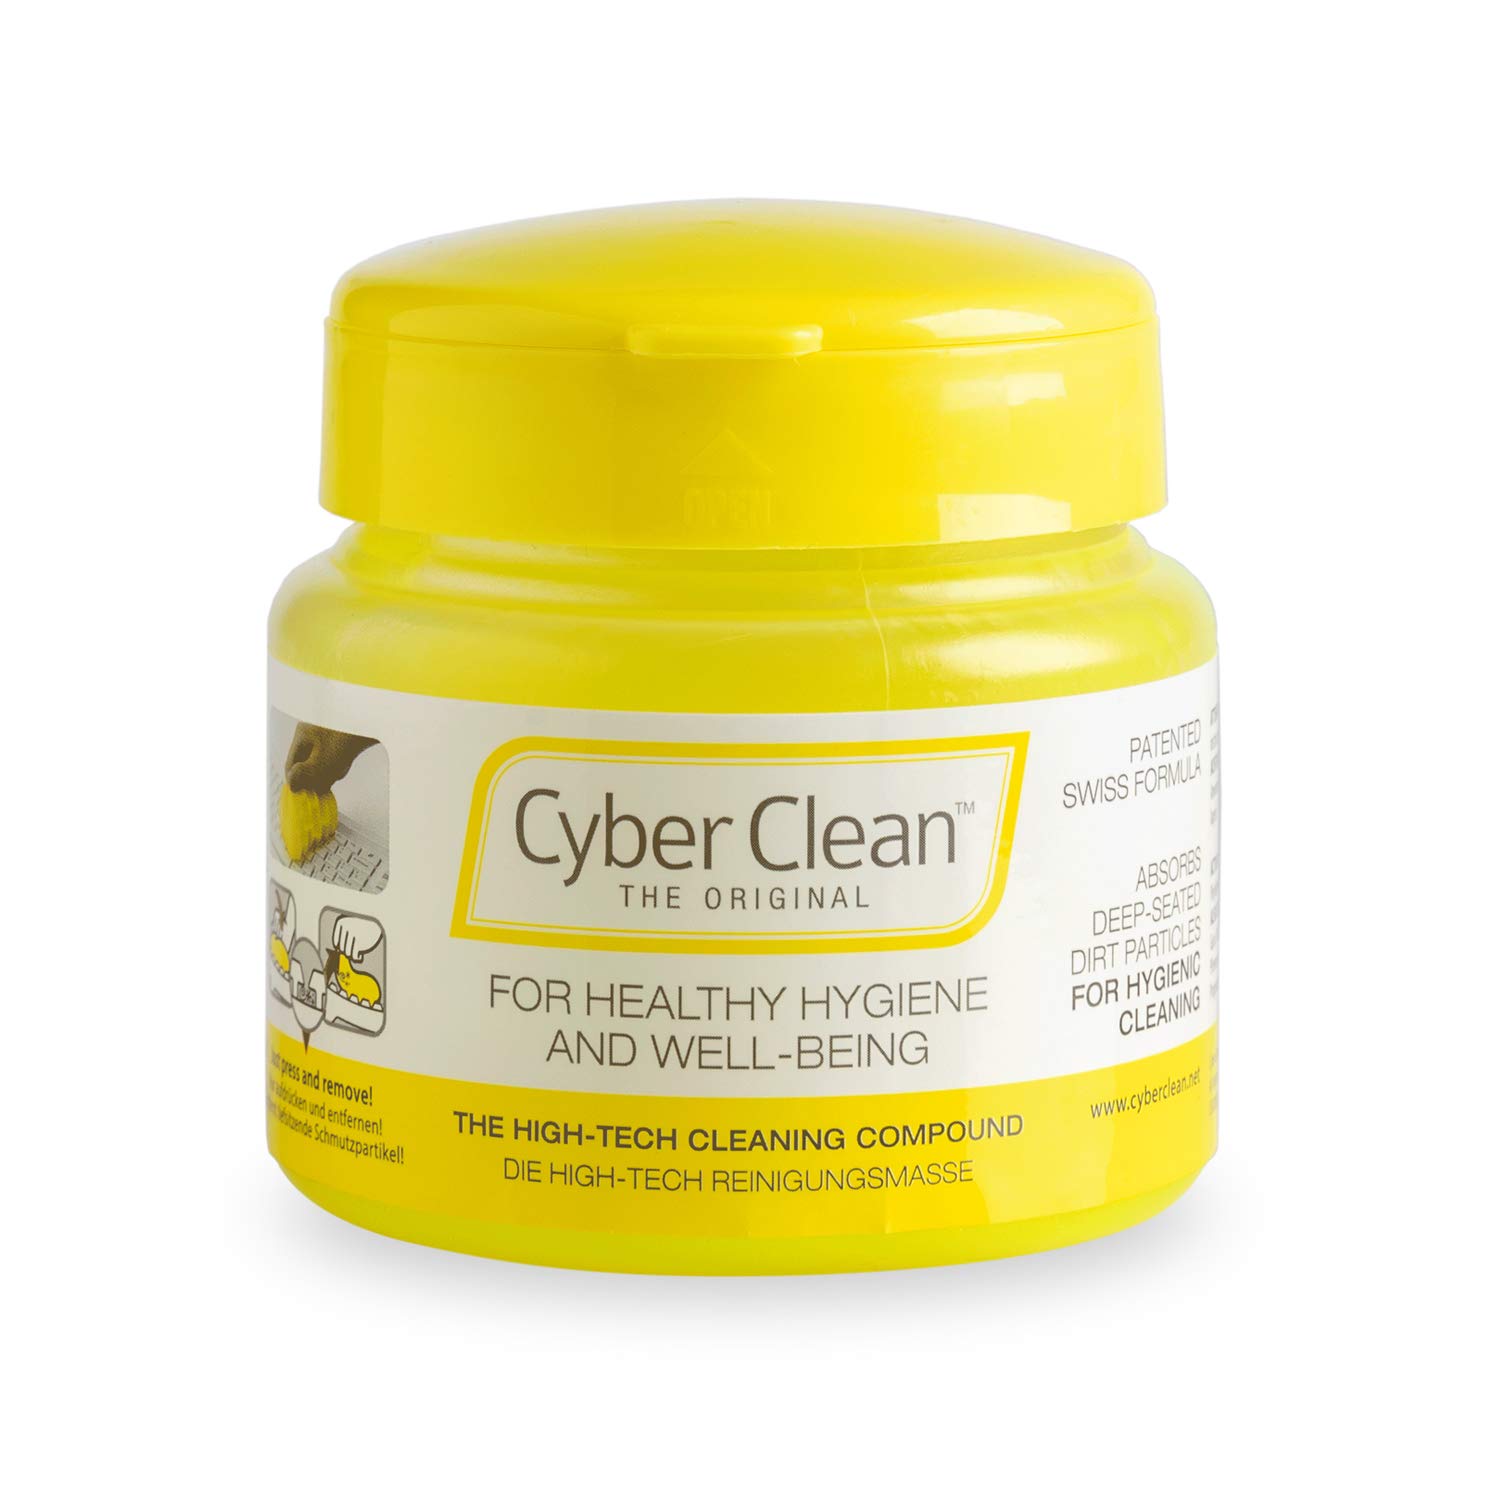 CYBER CLEAN The Original Reinigungsmasse 145g – Reinigungsgel, Staubentferner, Tastaturreiniger für Haushalt, Elektronik & Auto von Cyber Clean